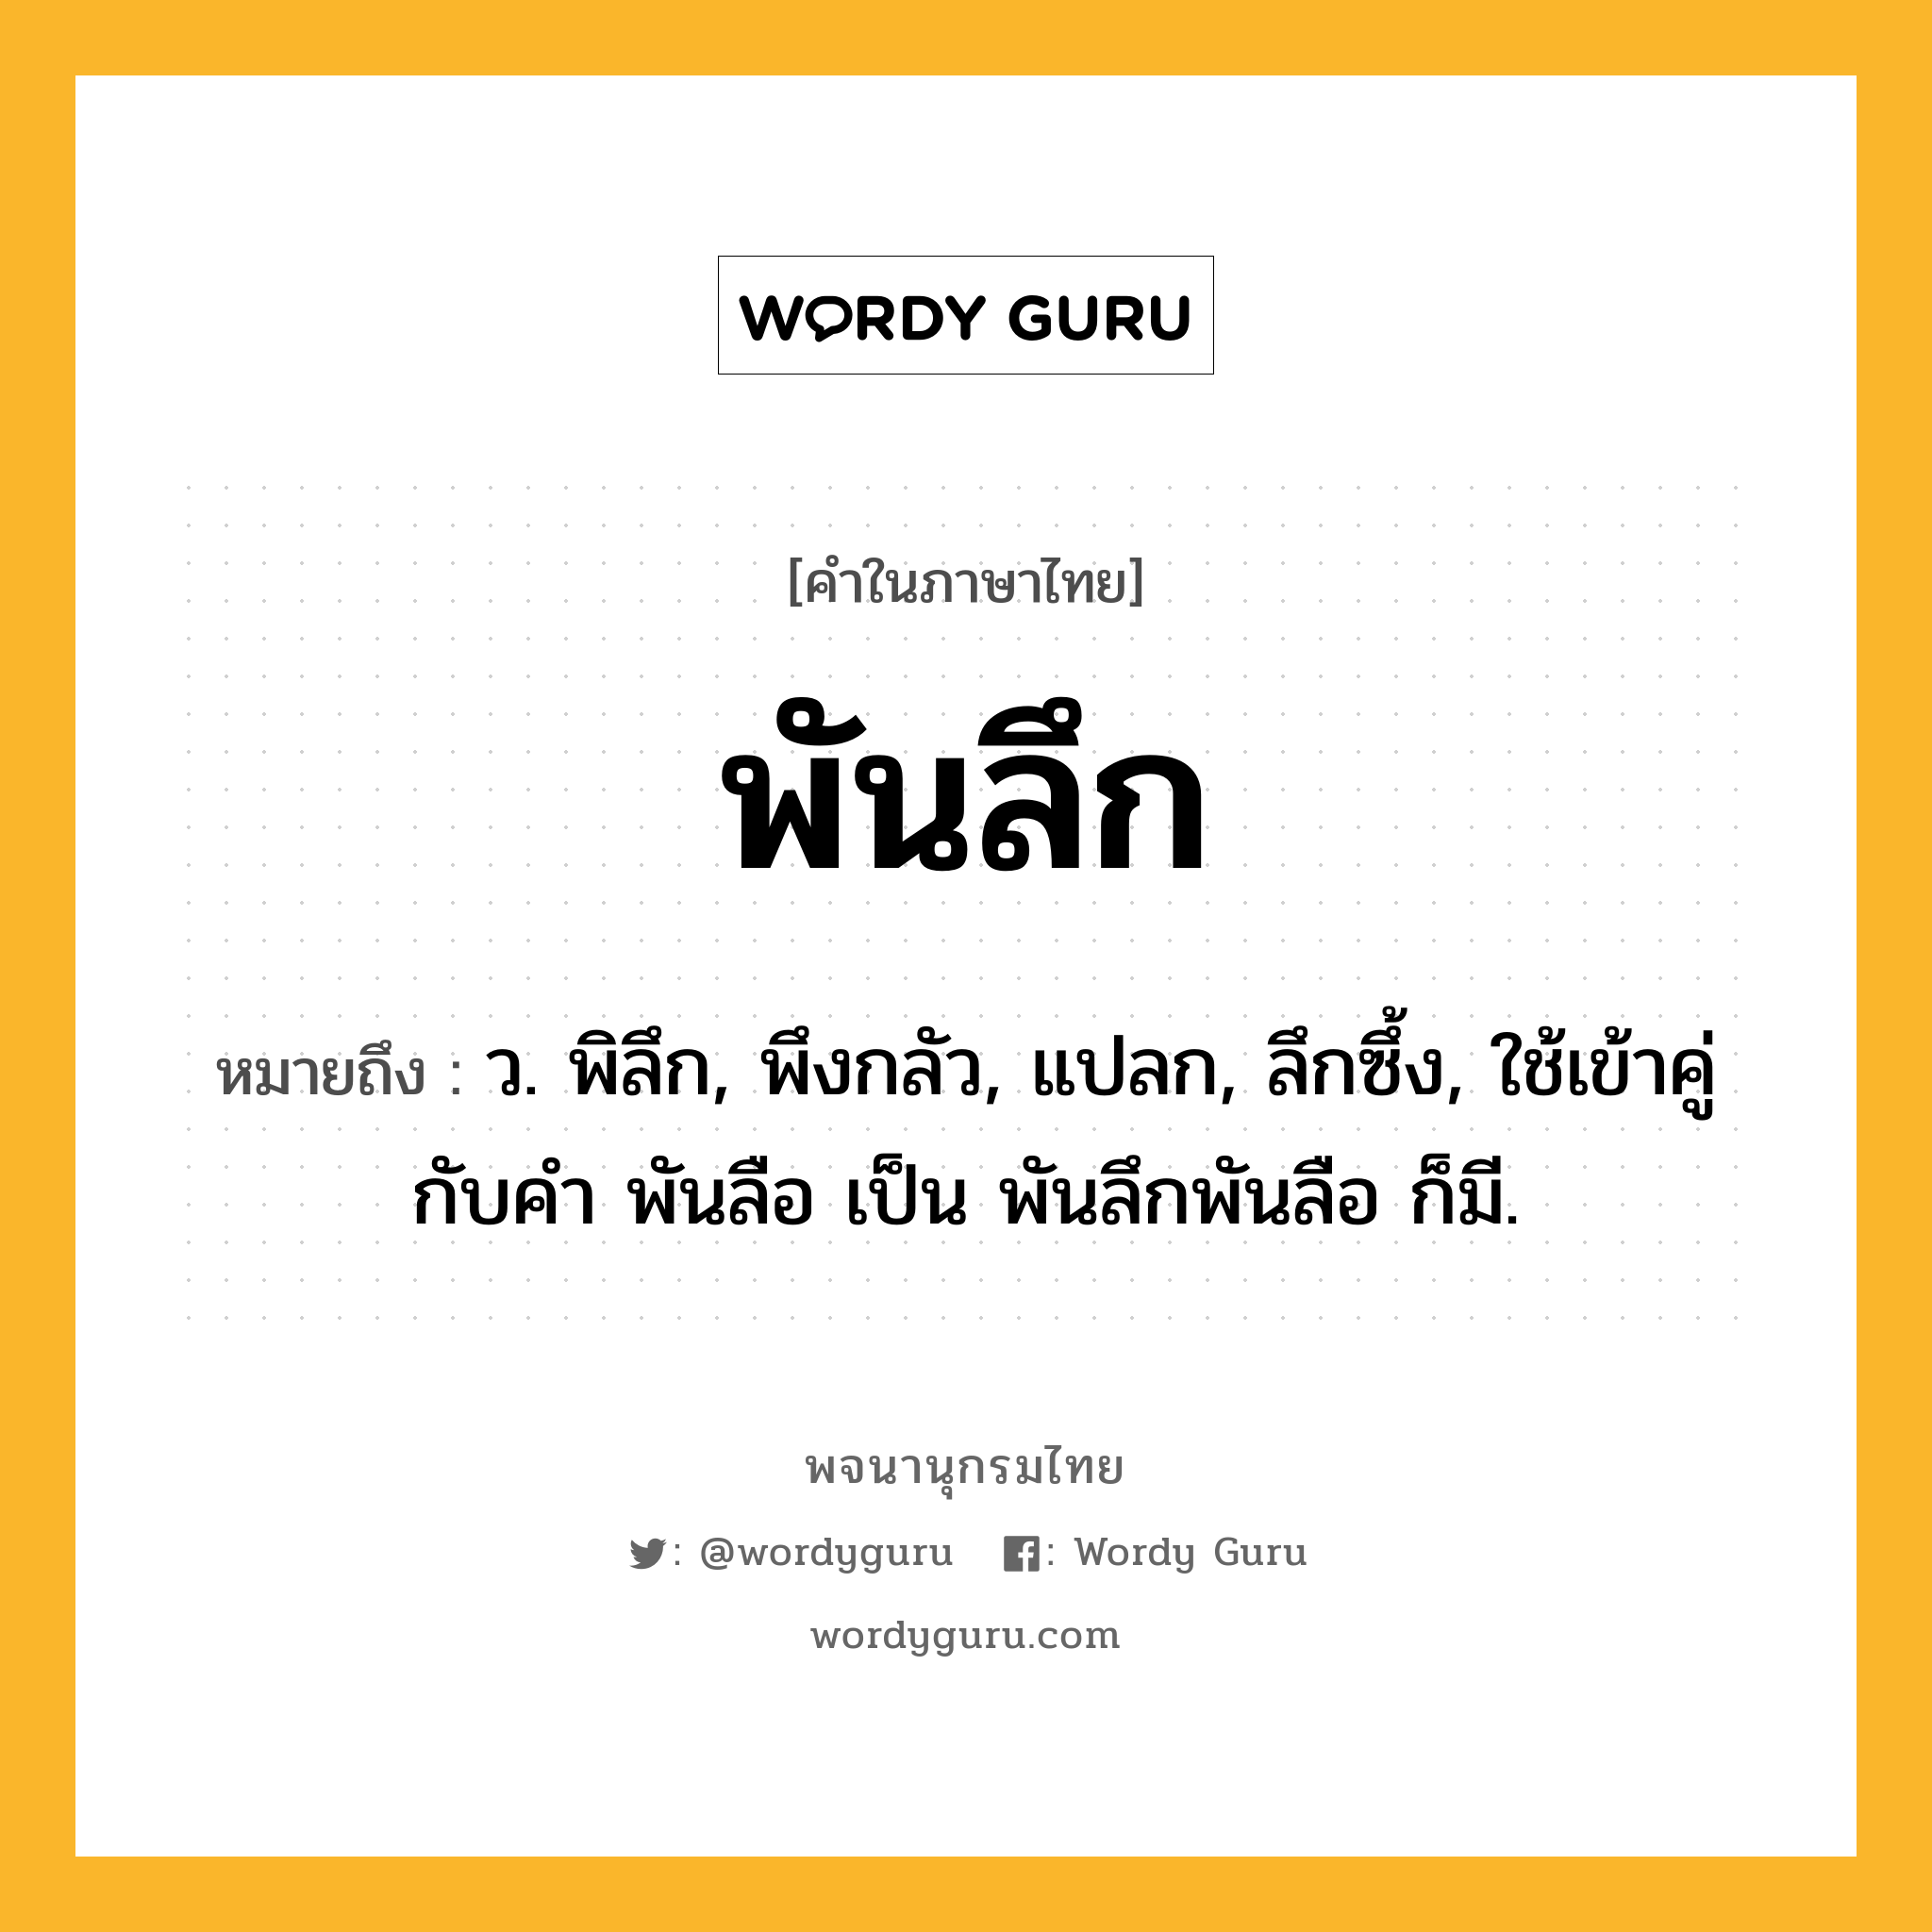 พันลึก ความหมาย หมายถึงอะไร?, คำในภาษาไทย พันลึก หมายถึง ว. พิลึก, พึงกลัว, แปลก, ลึกซึ้ง, ใช้เข้าคู่กับคํา พันลือ เป็น พันลึกพันลือ ก็มี.